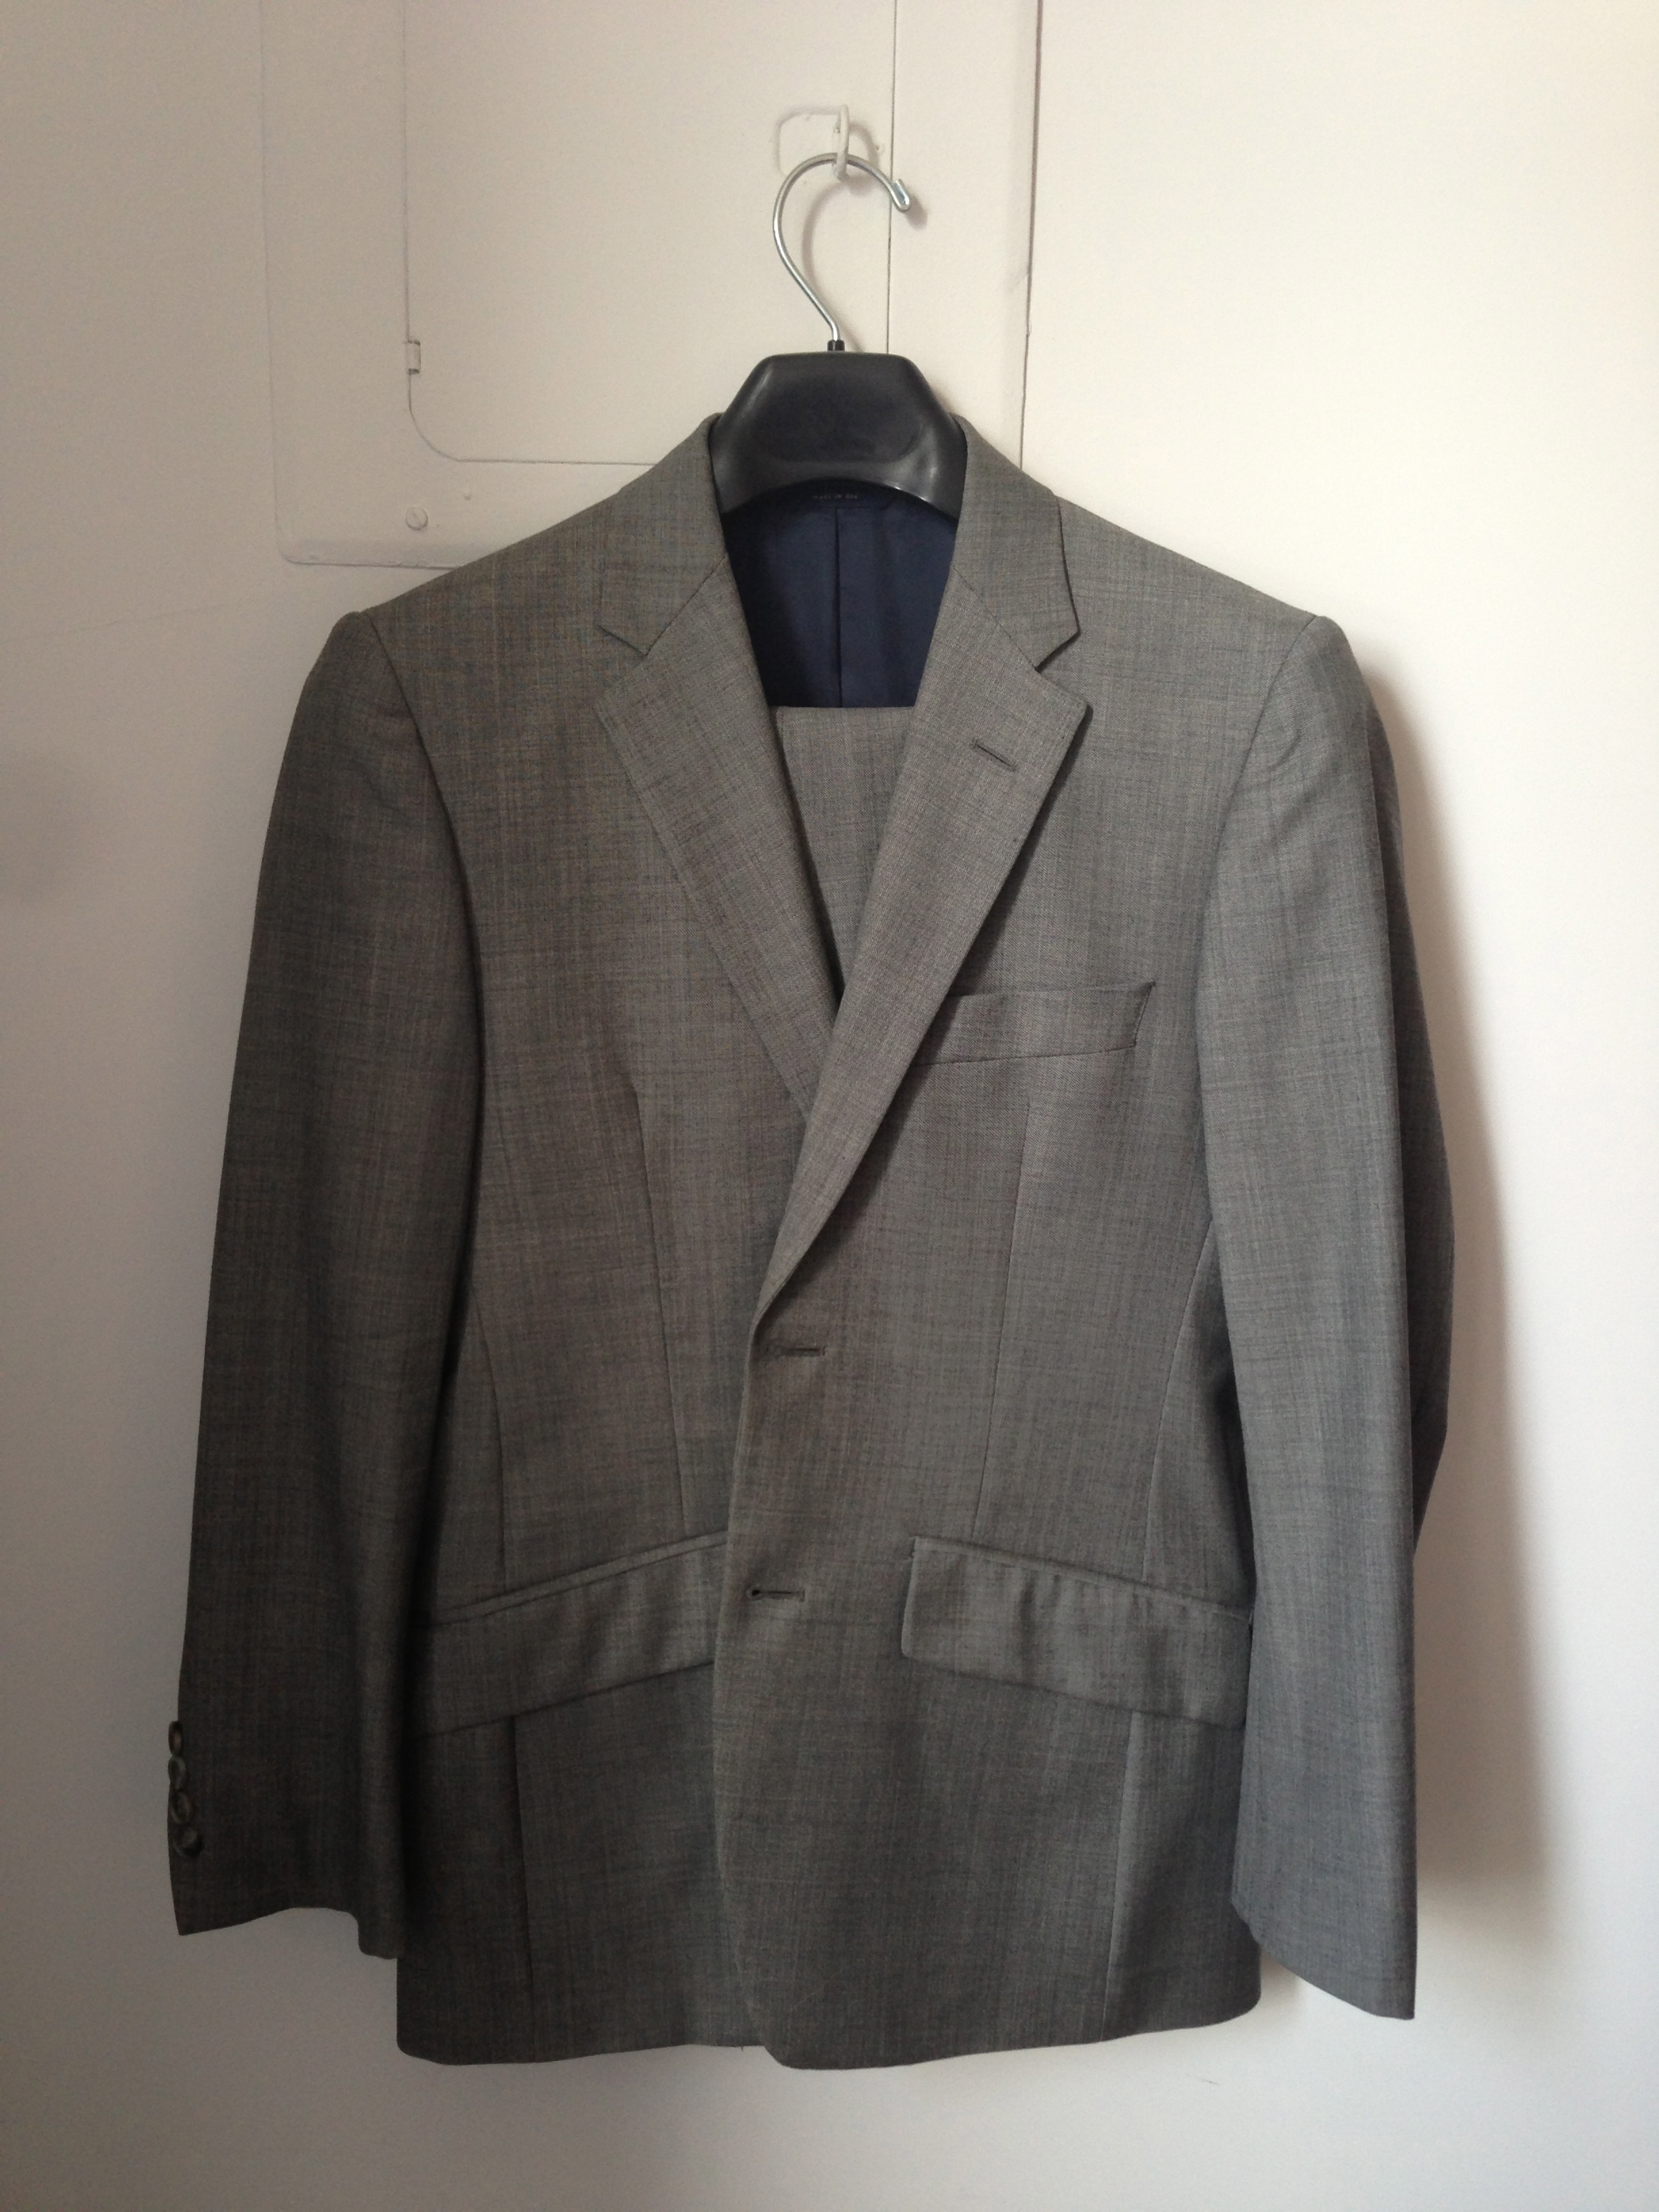 Suits in Sz. 36S: Thom Browne Black Fleece, Brooklyn Tailors Custom, RL ...